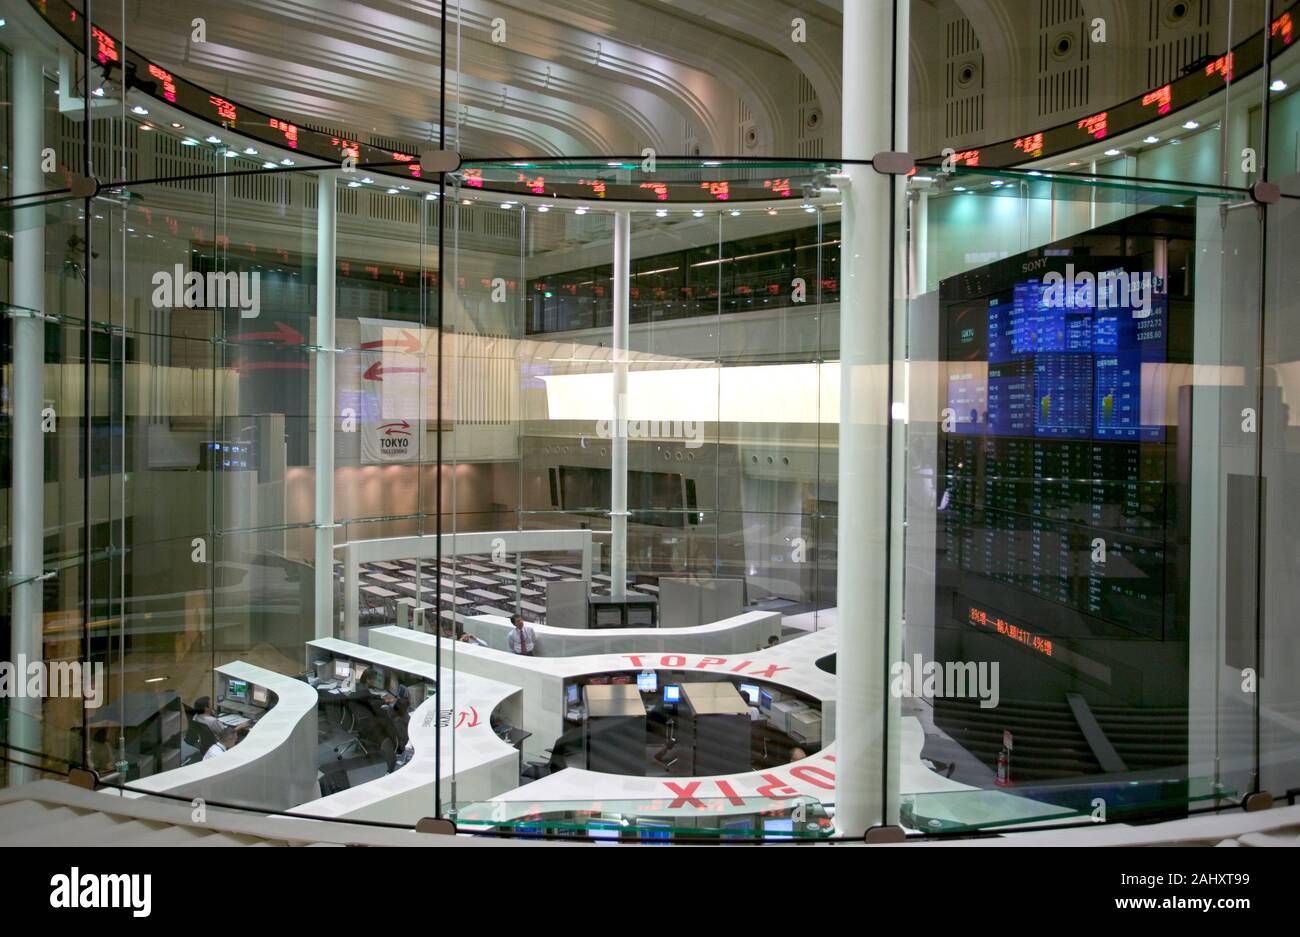 Tokio Stock Exchange. Tokio, Japan. Stock Photo